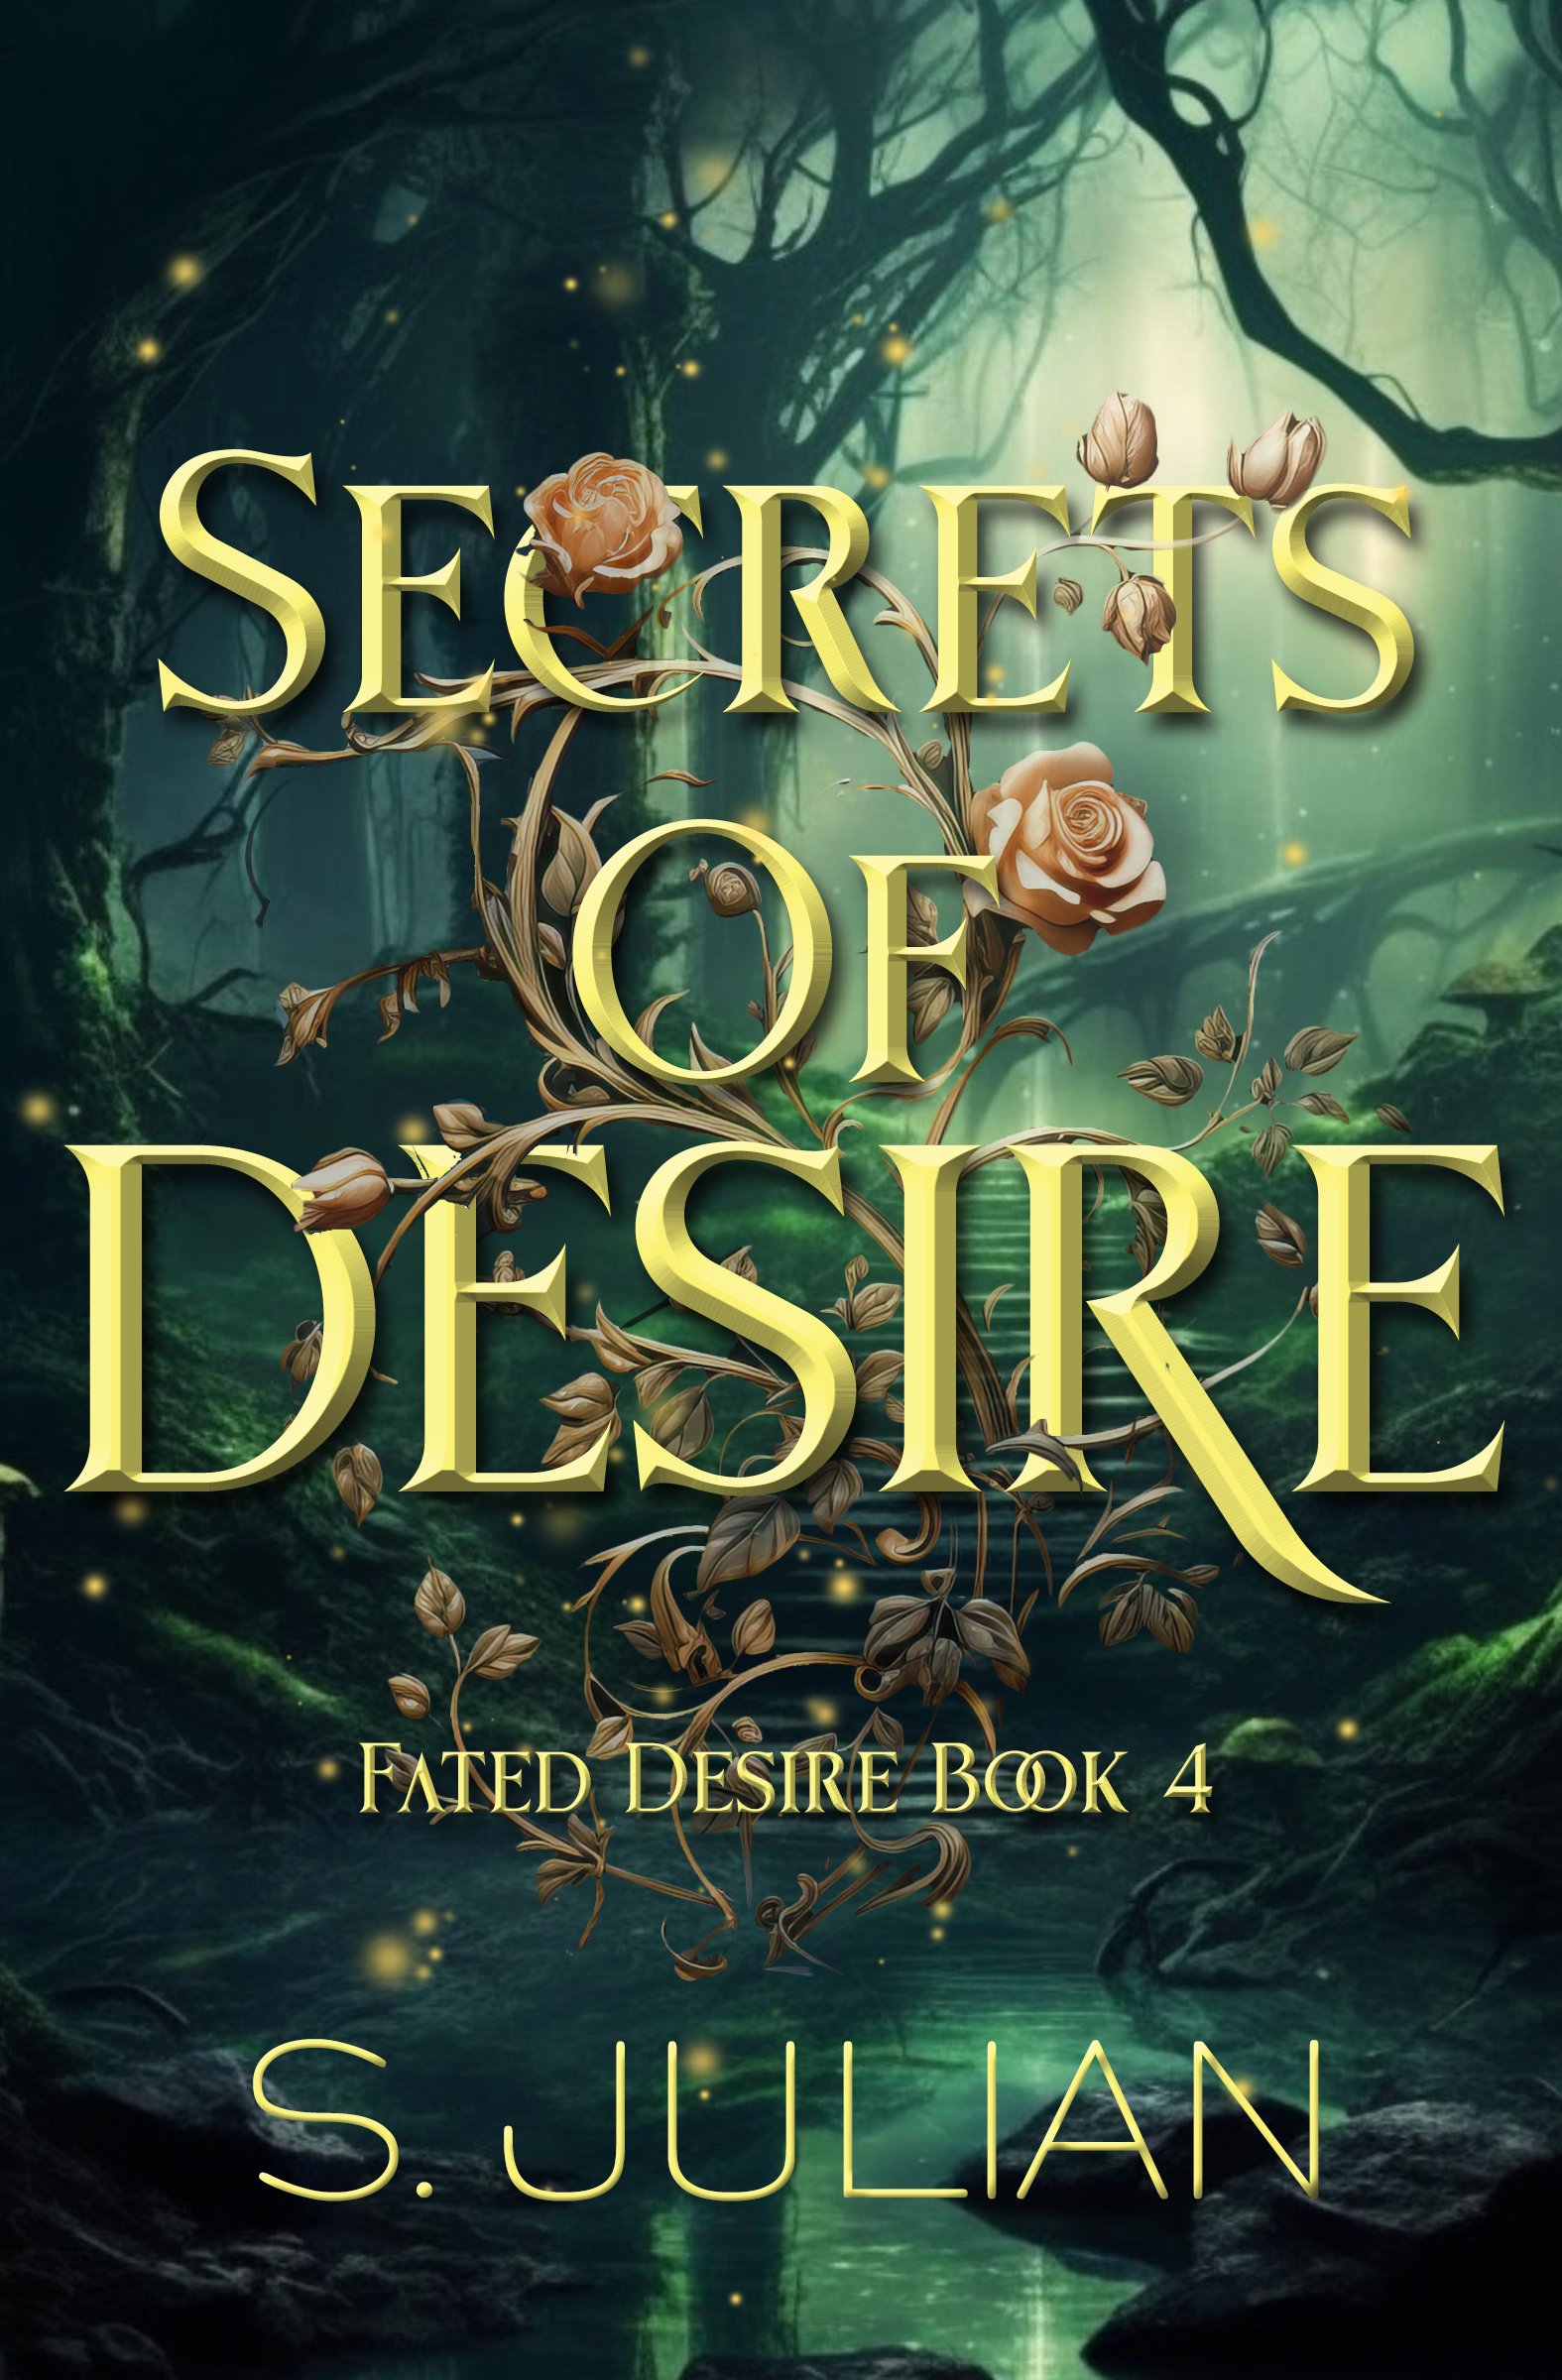 Secrets-of-Desires-2.jpg